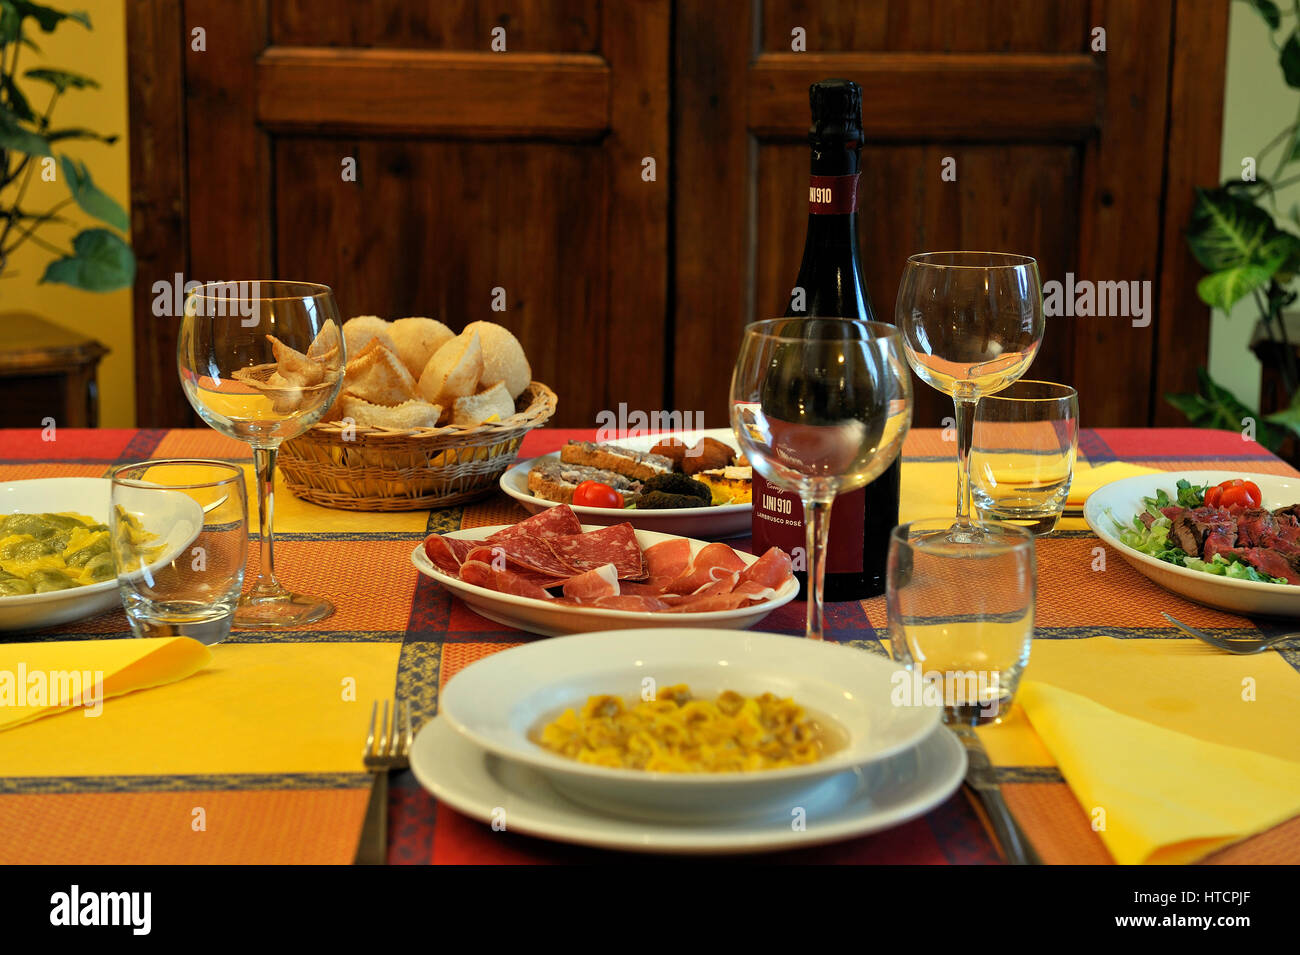 Italian food on italian restaurant table Stock Photo